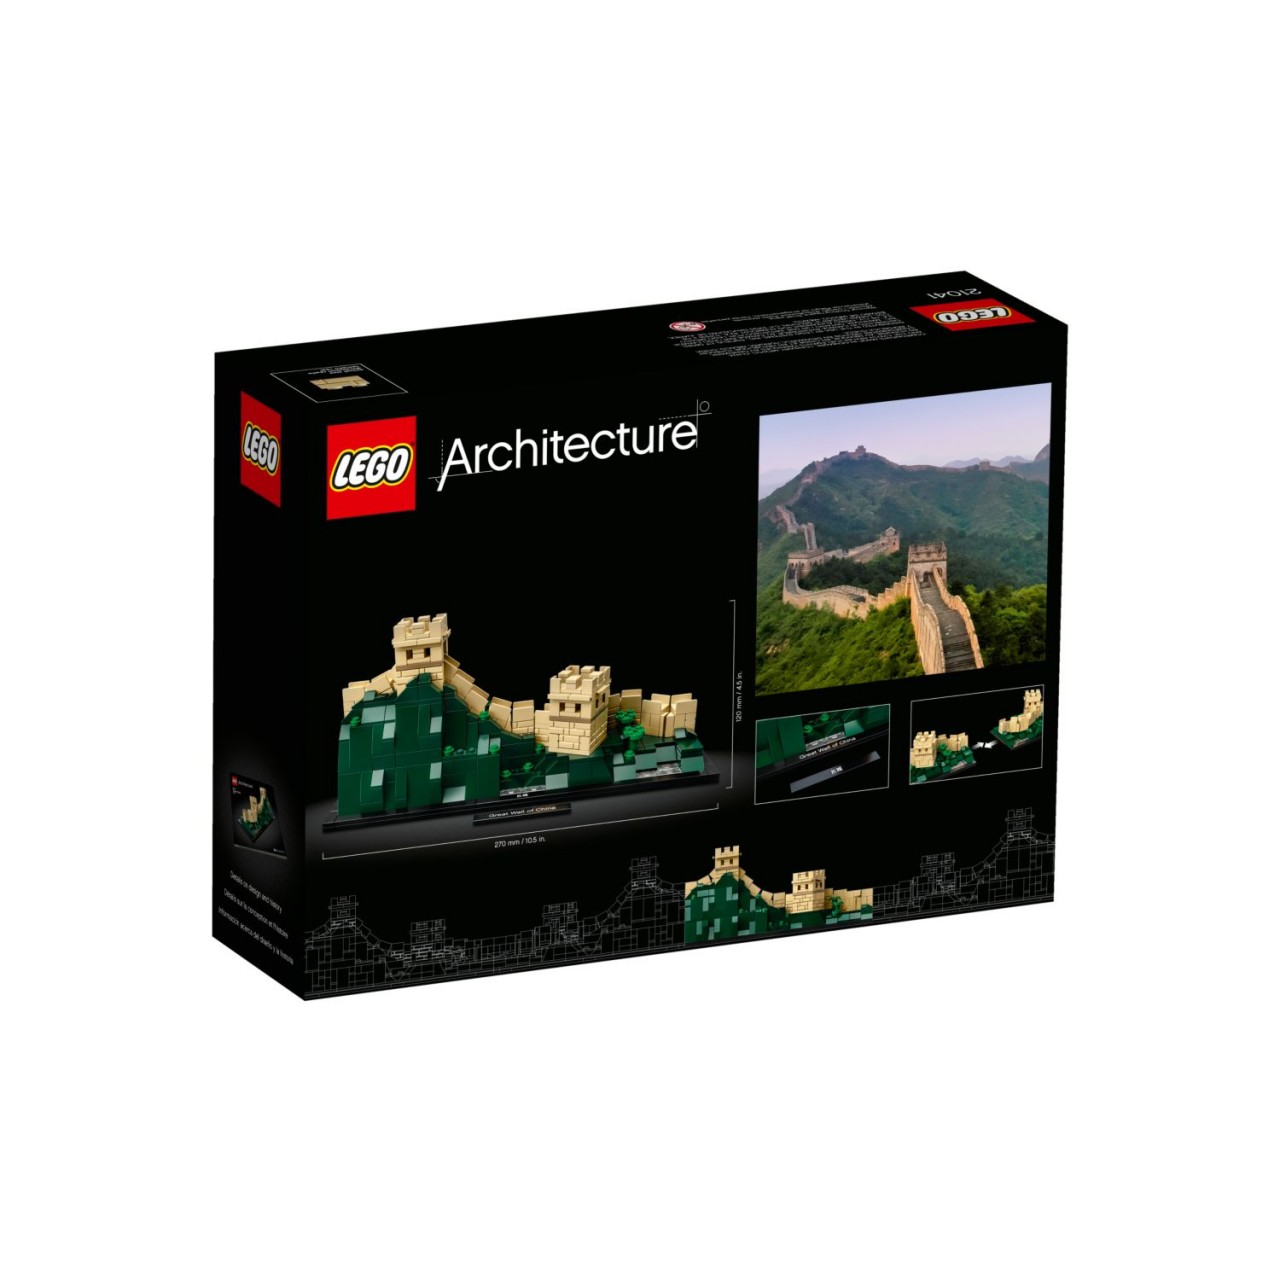 LEGO ARCHITECTURE 21041 Die Chinesische Mauer